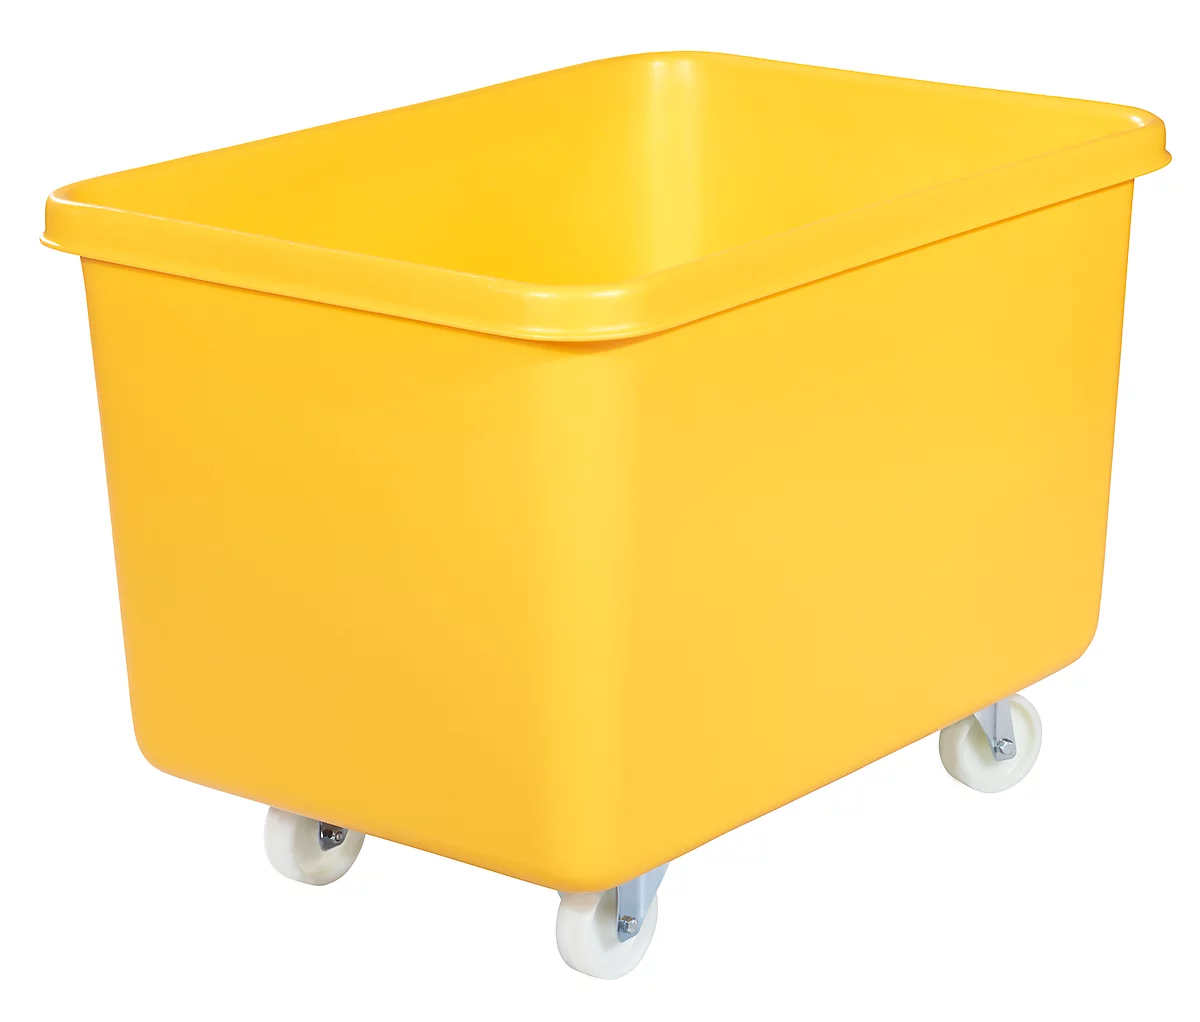 Rechteckbehälter, Kunststoff, fahrbar, 340 l, gelb